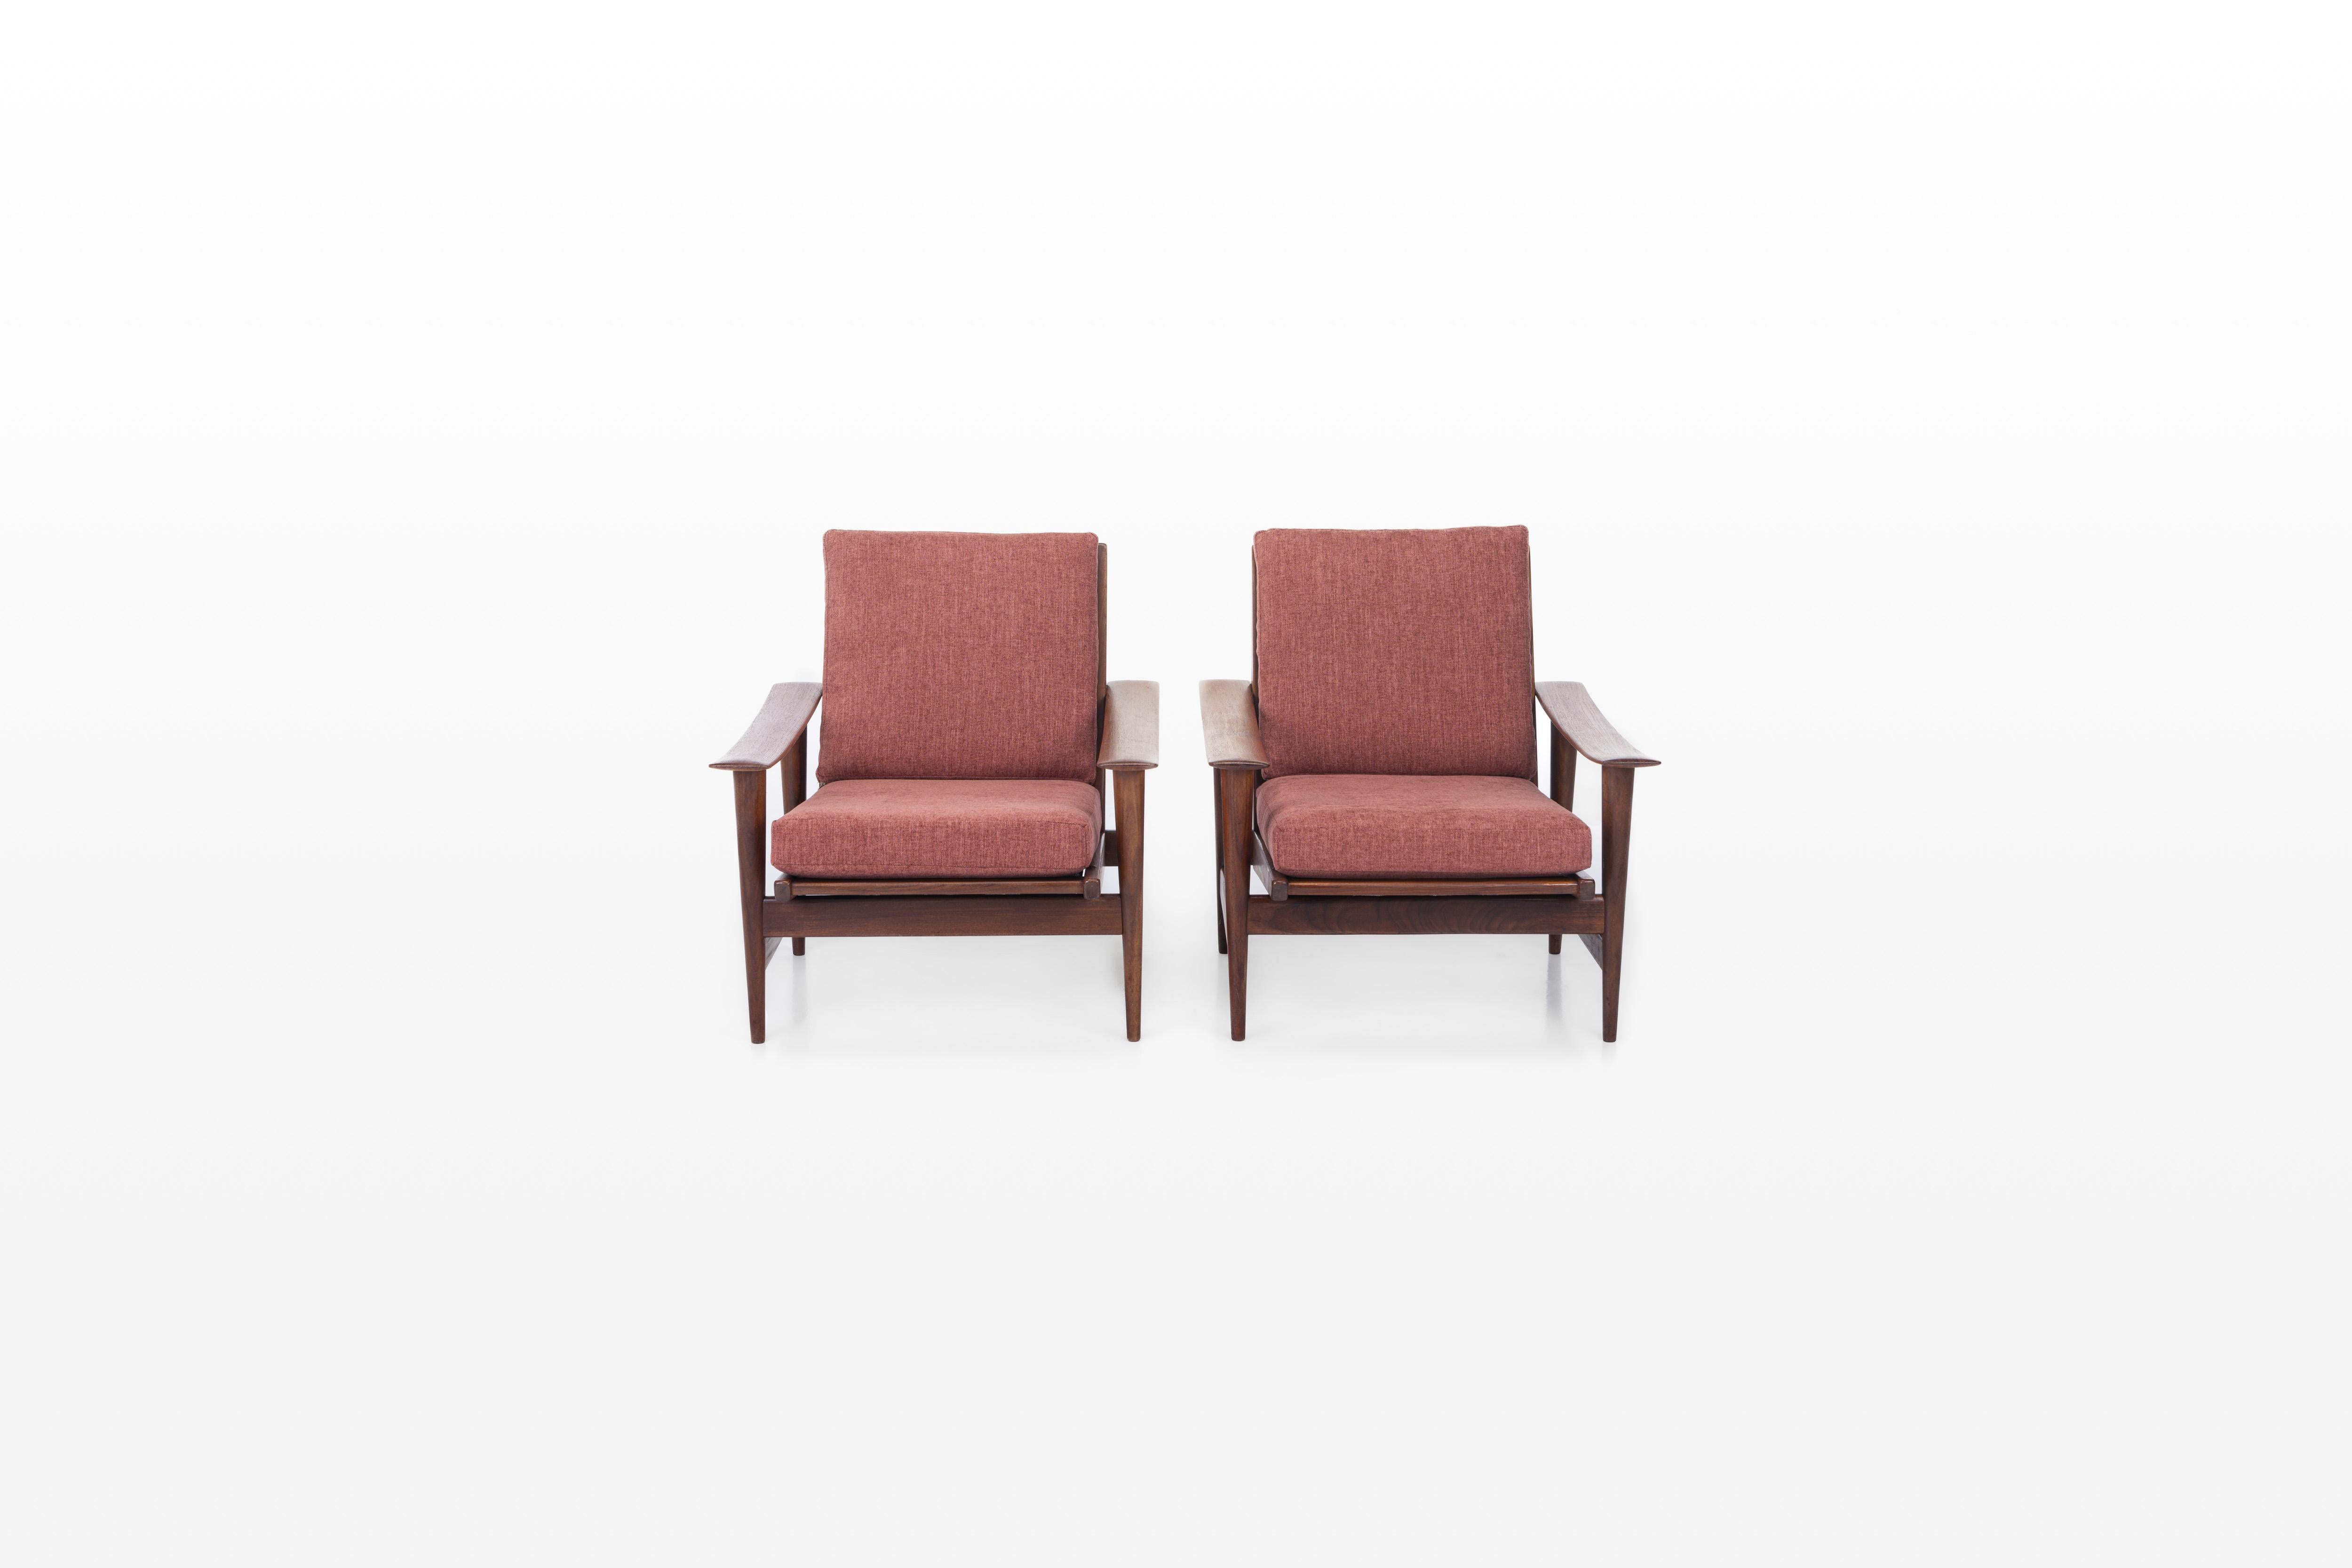 Satz von zwei Vintage-Sesseln in sehr gutem Zustand. Die Sessel sind mit einem bordeauxfarbenen Stoff neu gepolstert. Preis für den Satz von zwei.

Abmessungen:
B: 72 cm
T: 80 cm
H: 78 cm